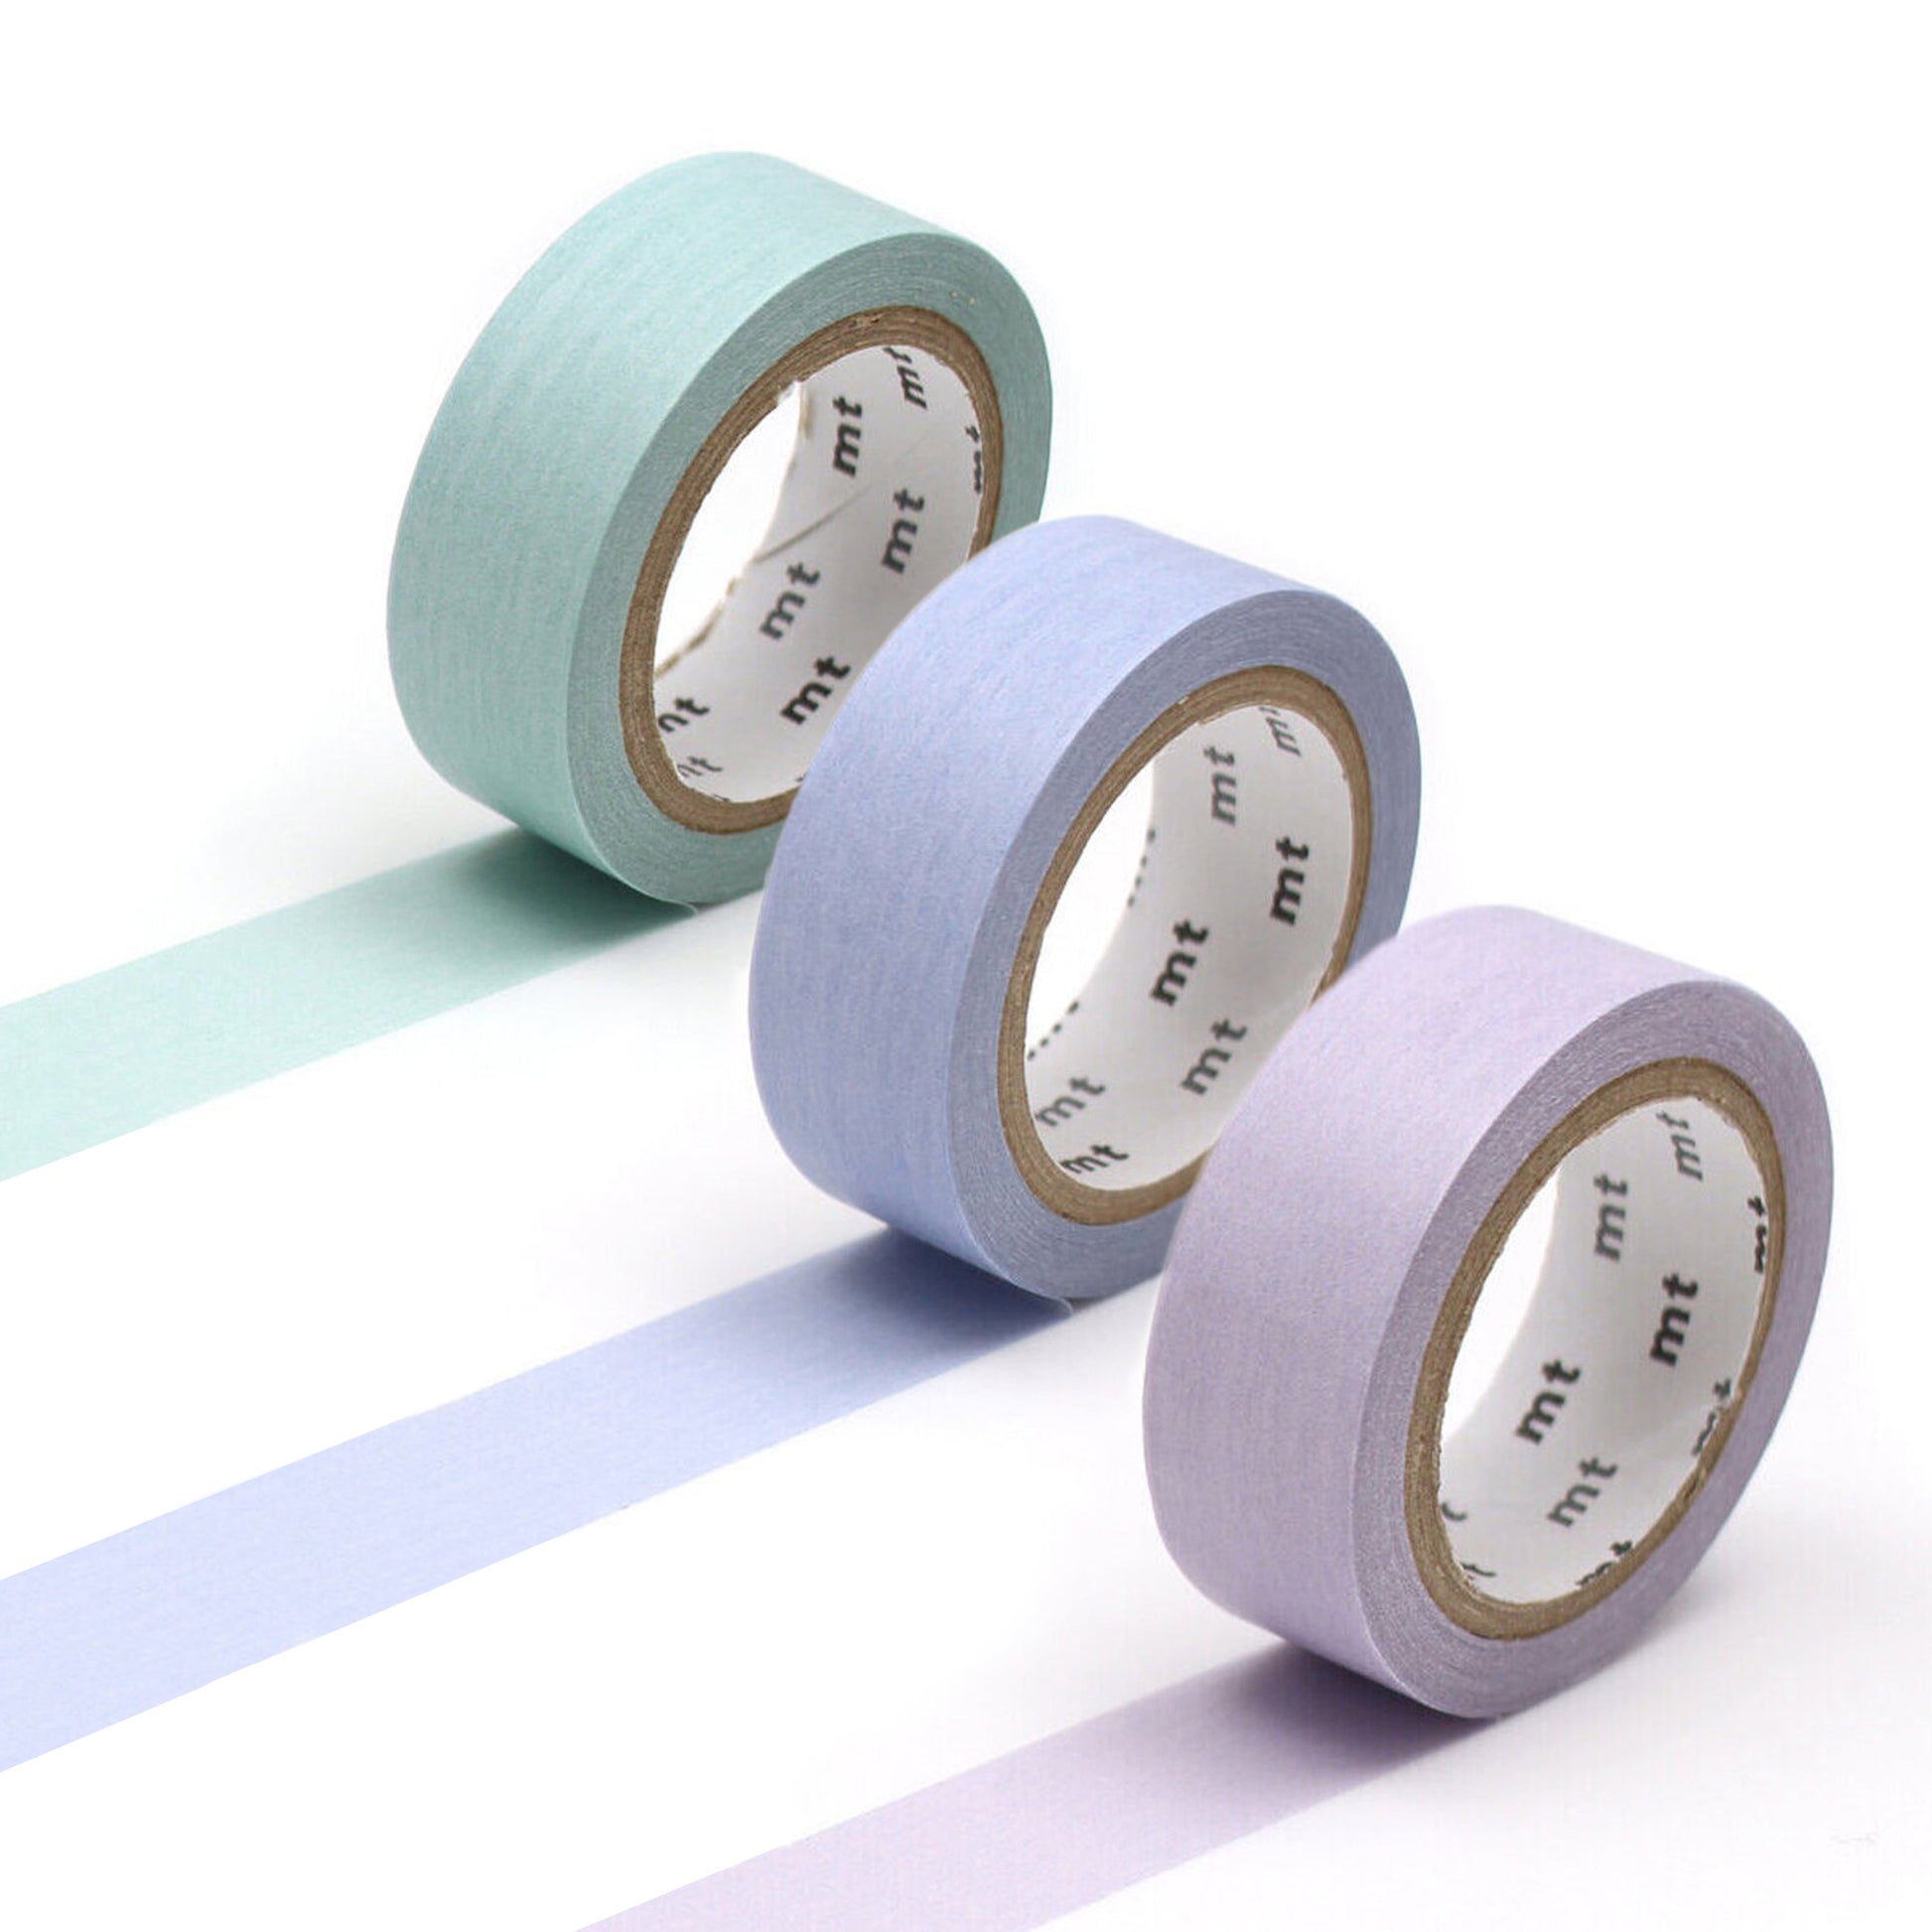 MT Pastel Turquoise Washi Tape